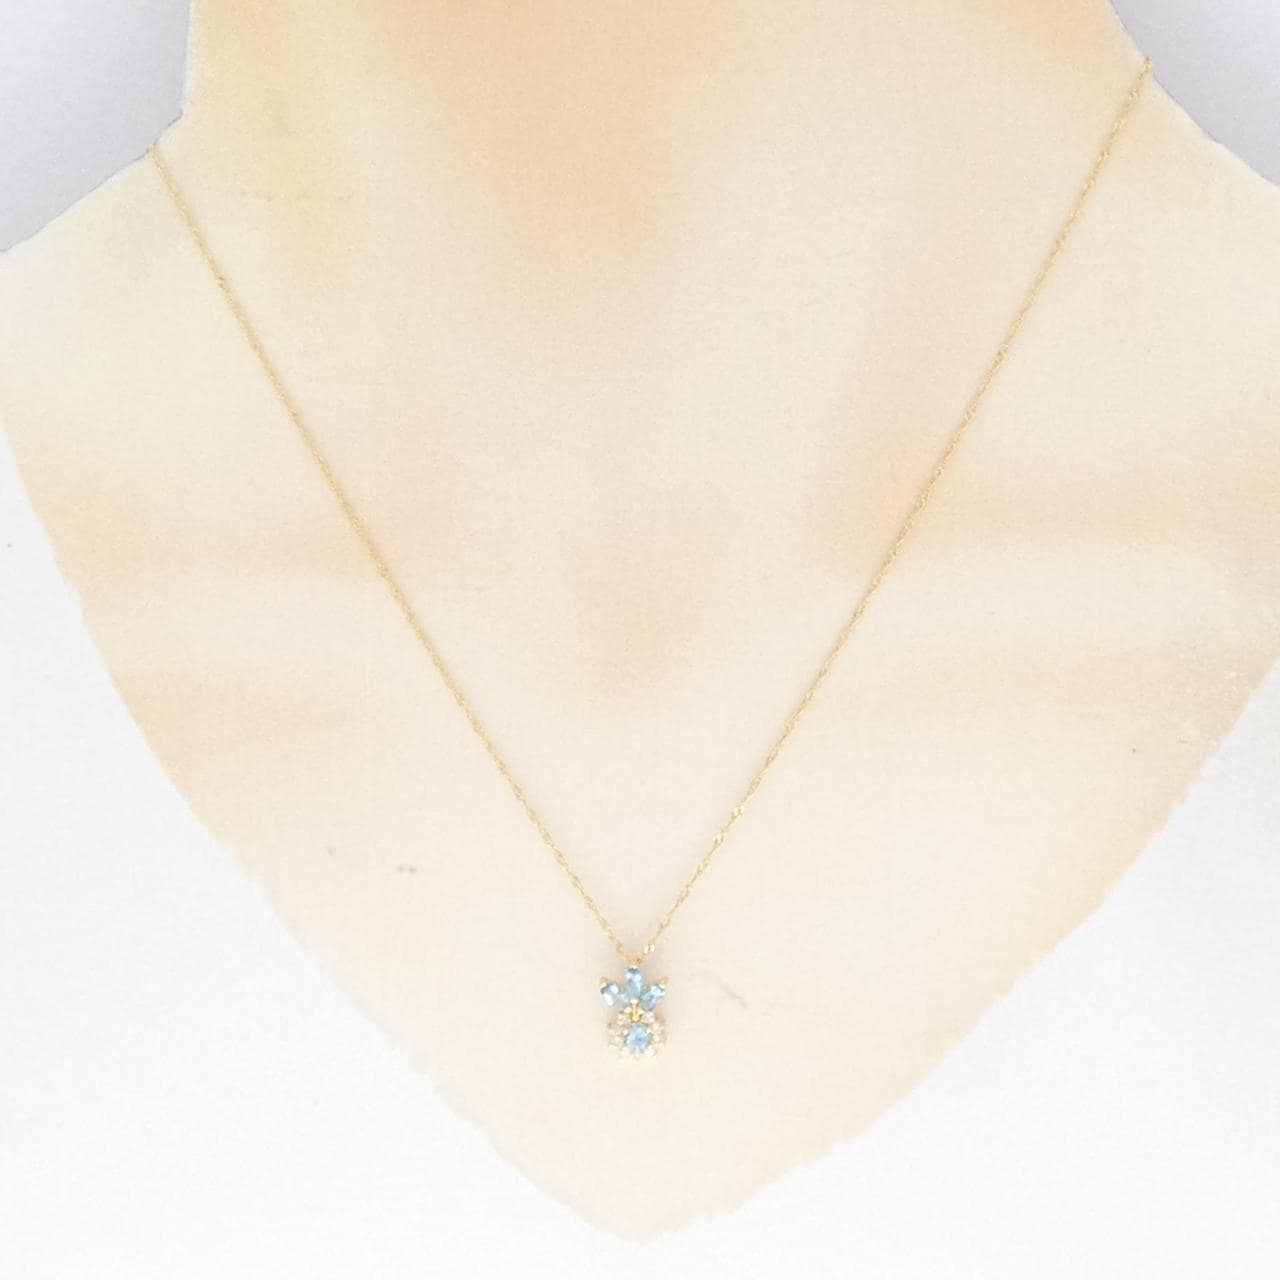 K18YG blue Topaz necklace